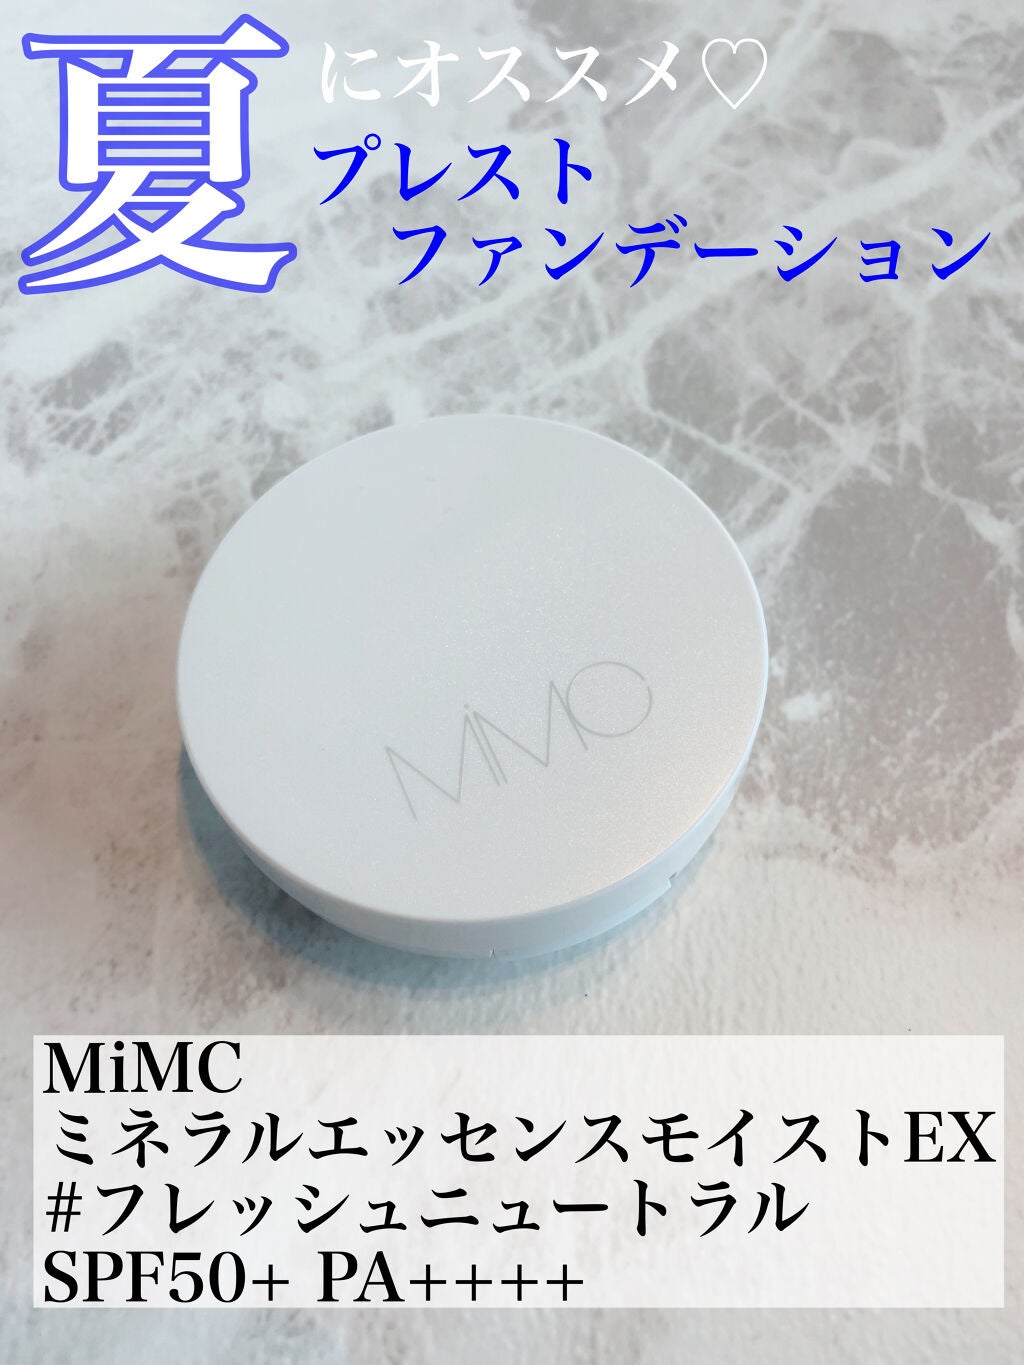 MiMC ミネラルエッセンスモイストEX SPF50+ PA++++